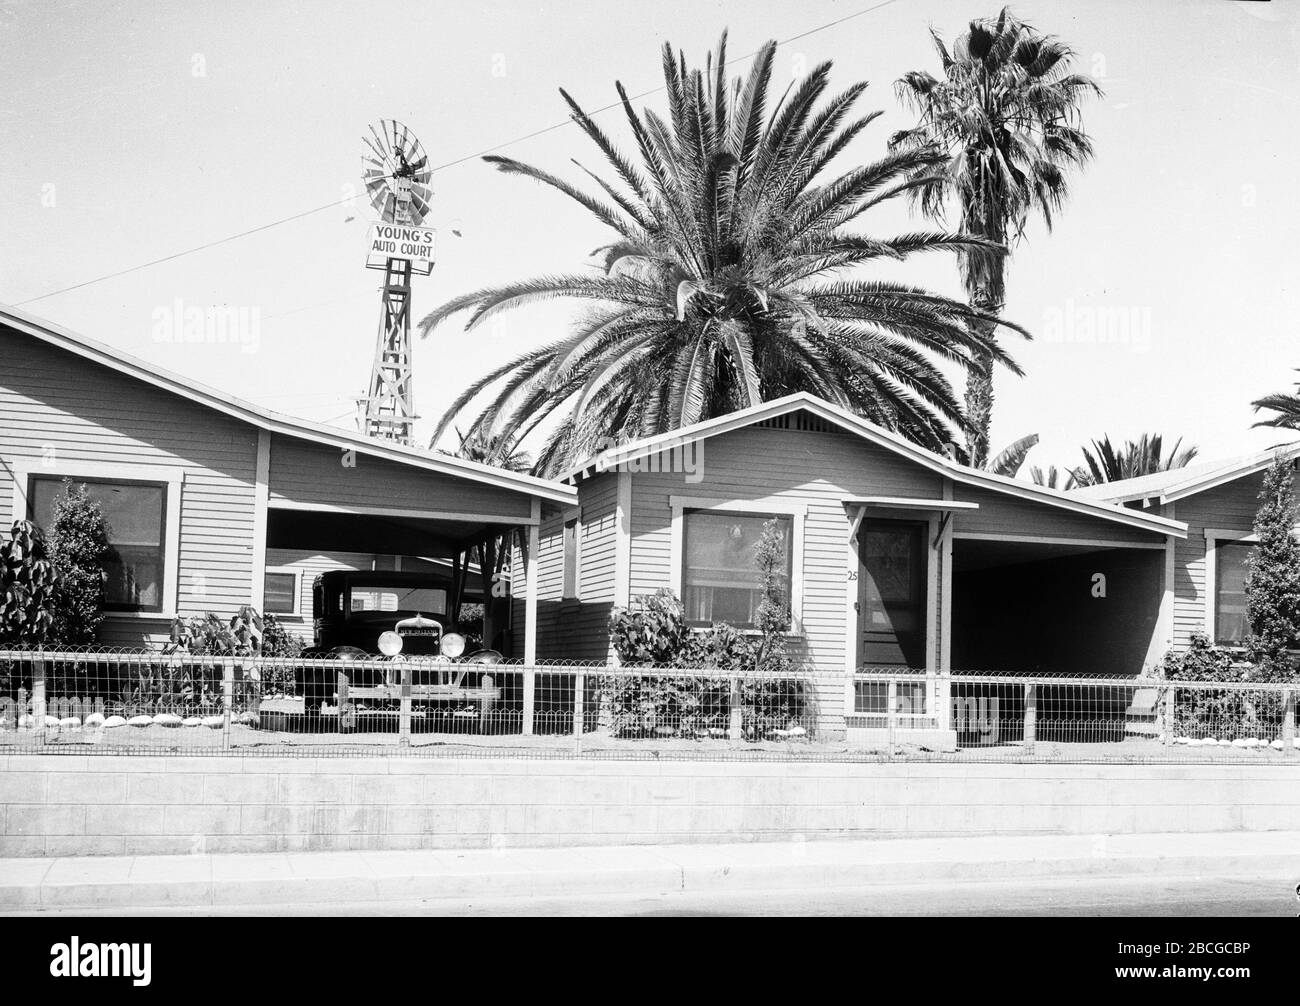 Young's Modern Auto court dans la vieille ville de San Diego, Californie, 1931. Photographie par Burton Holmes. Banque D'Images